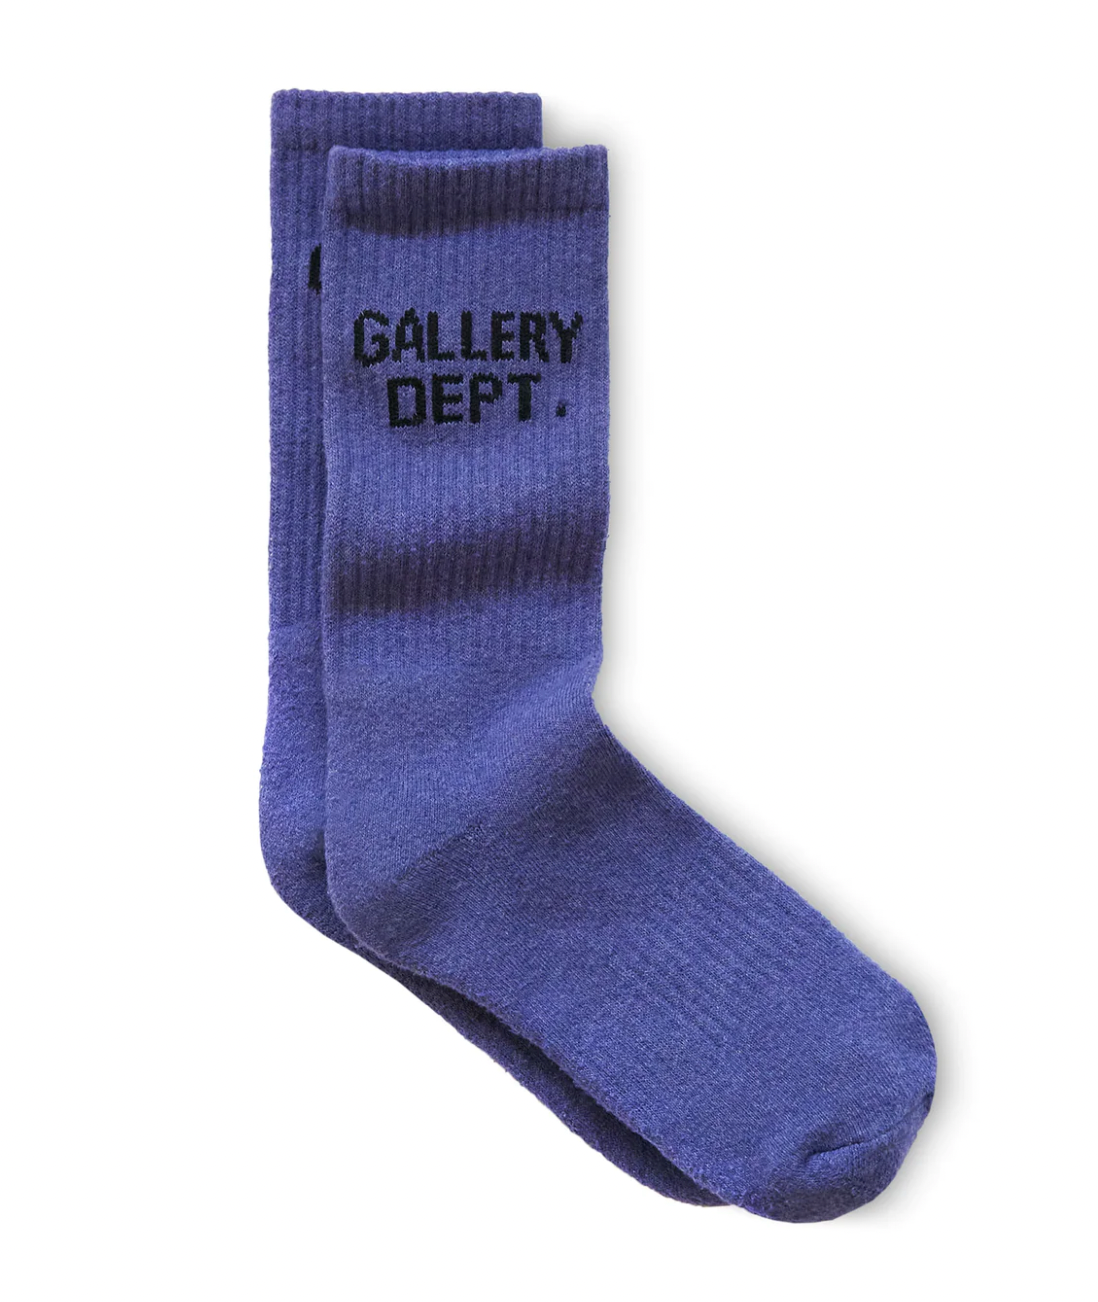 Gallery Dept Clean Purple Socks